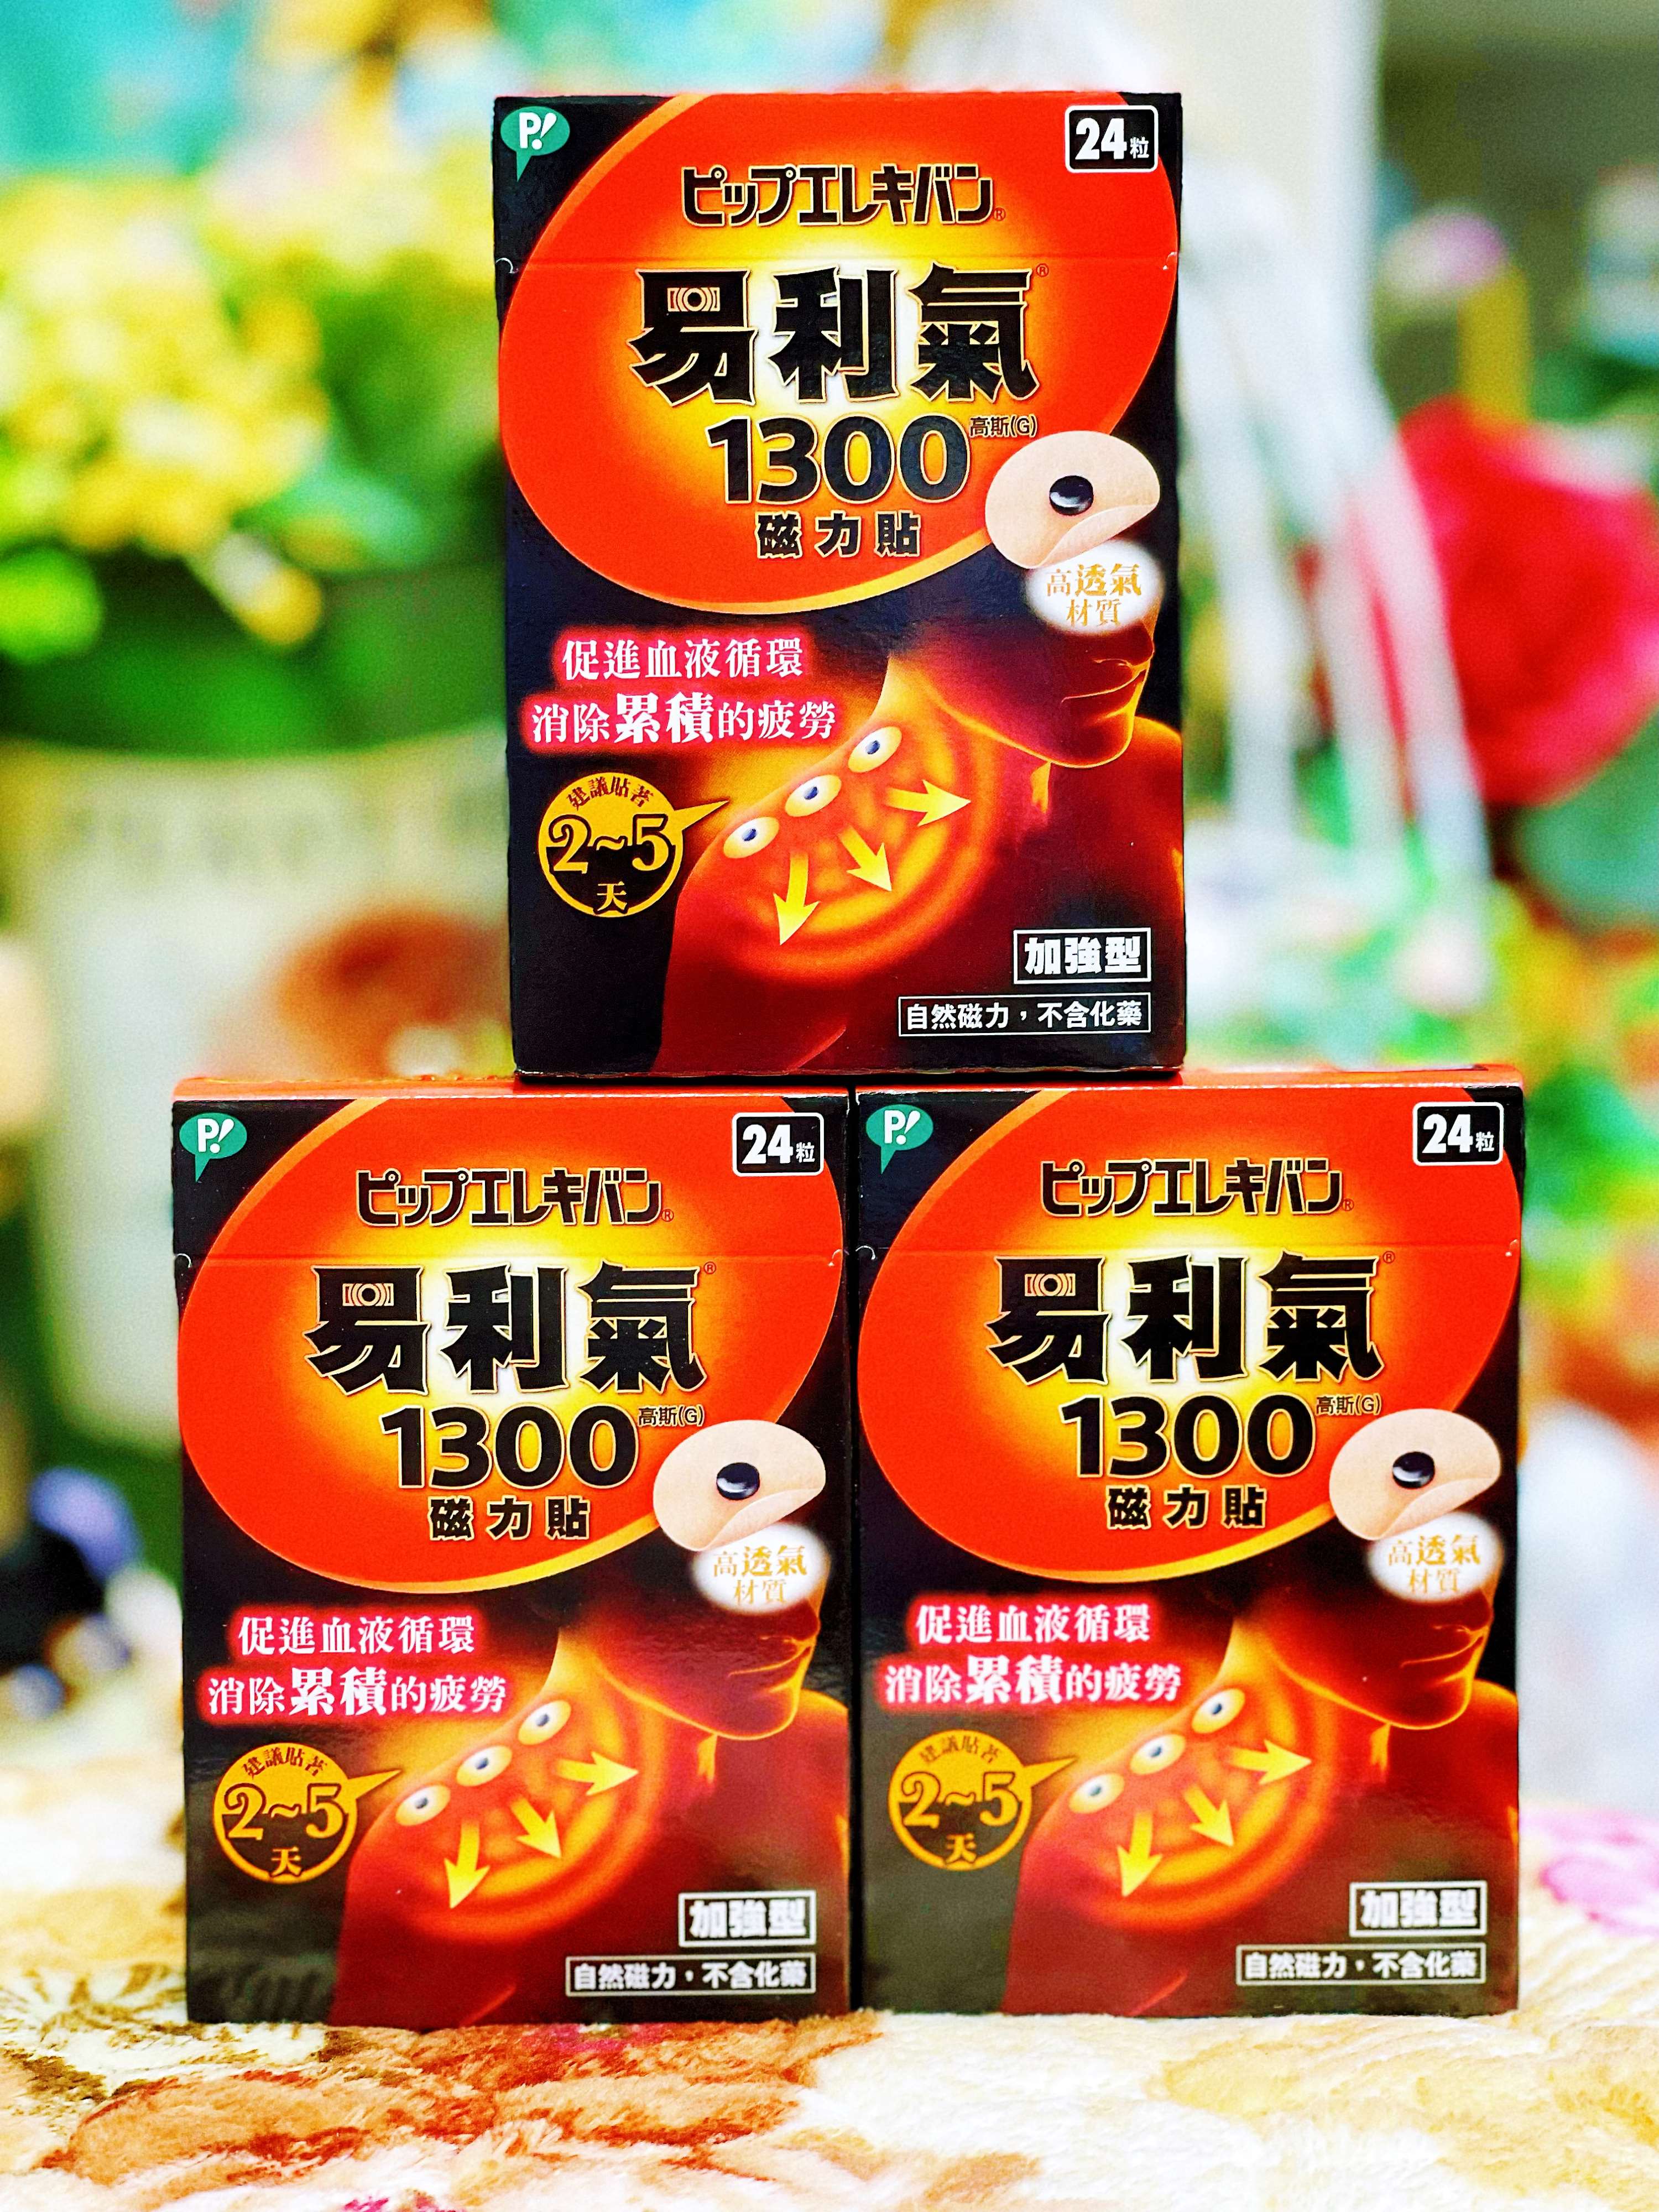 中文標，台灣代理商 易利氣磁力貼加強型 1300高斯 (24粒/盒)